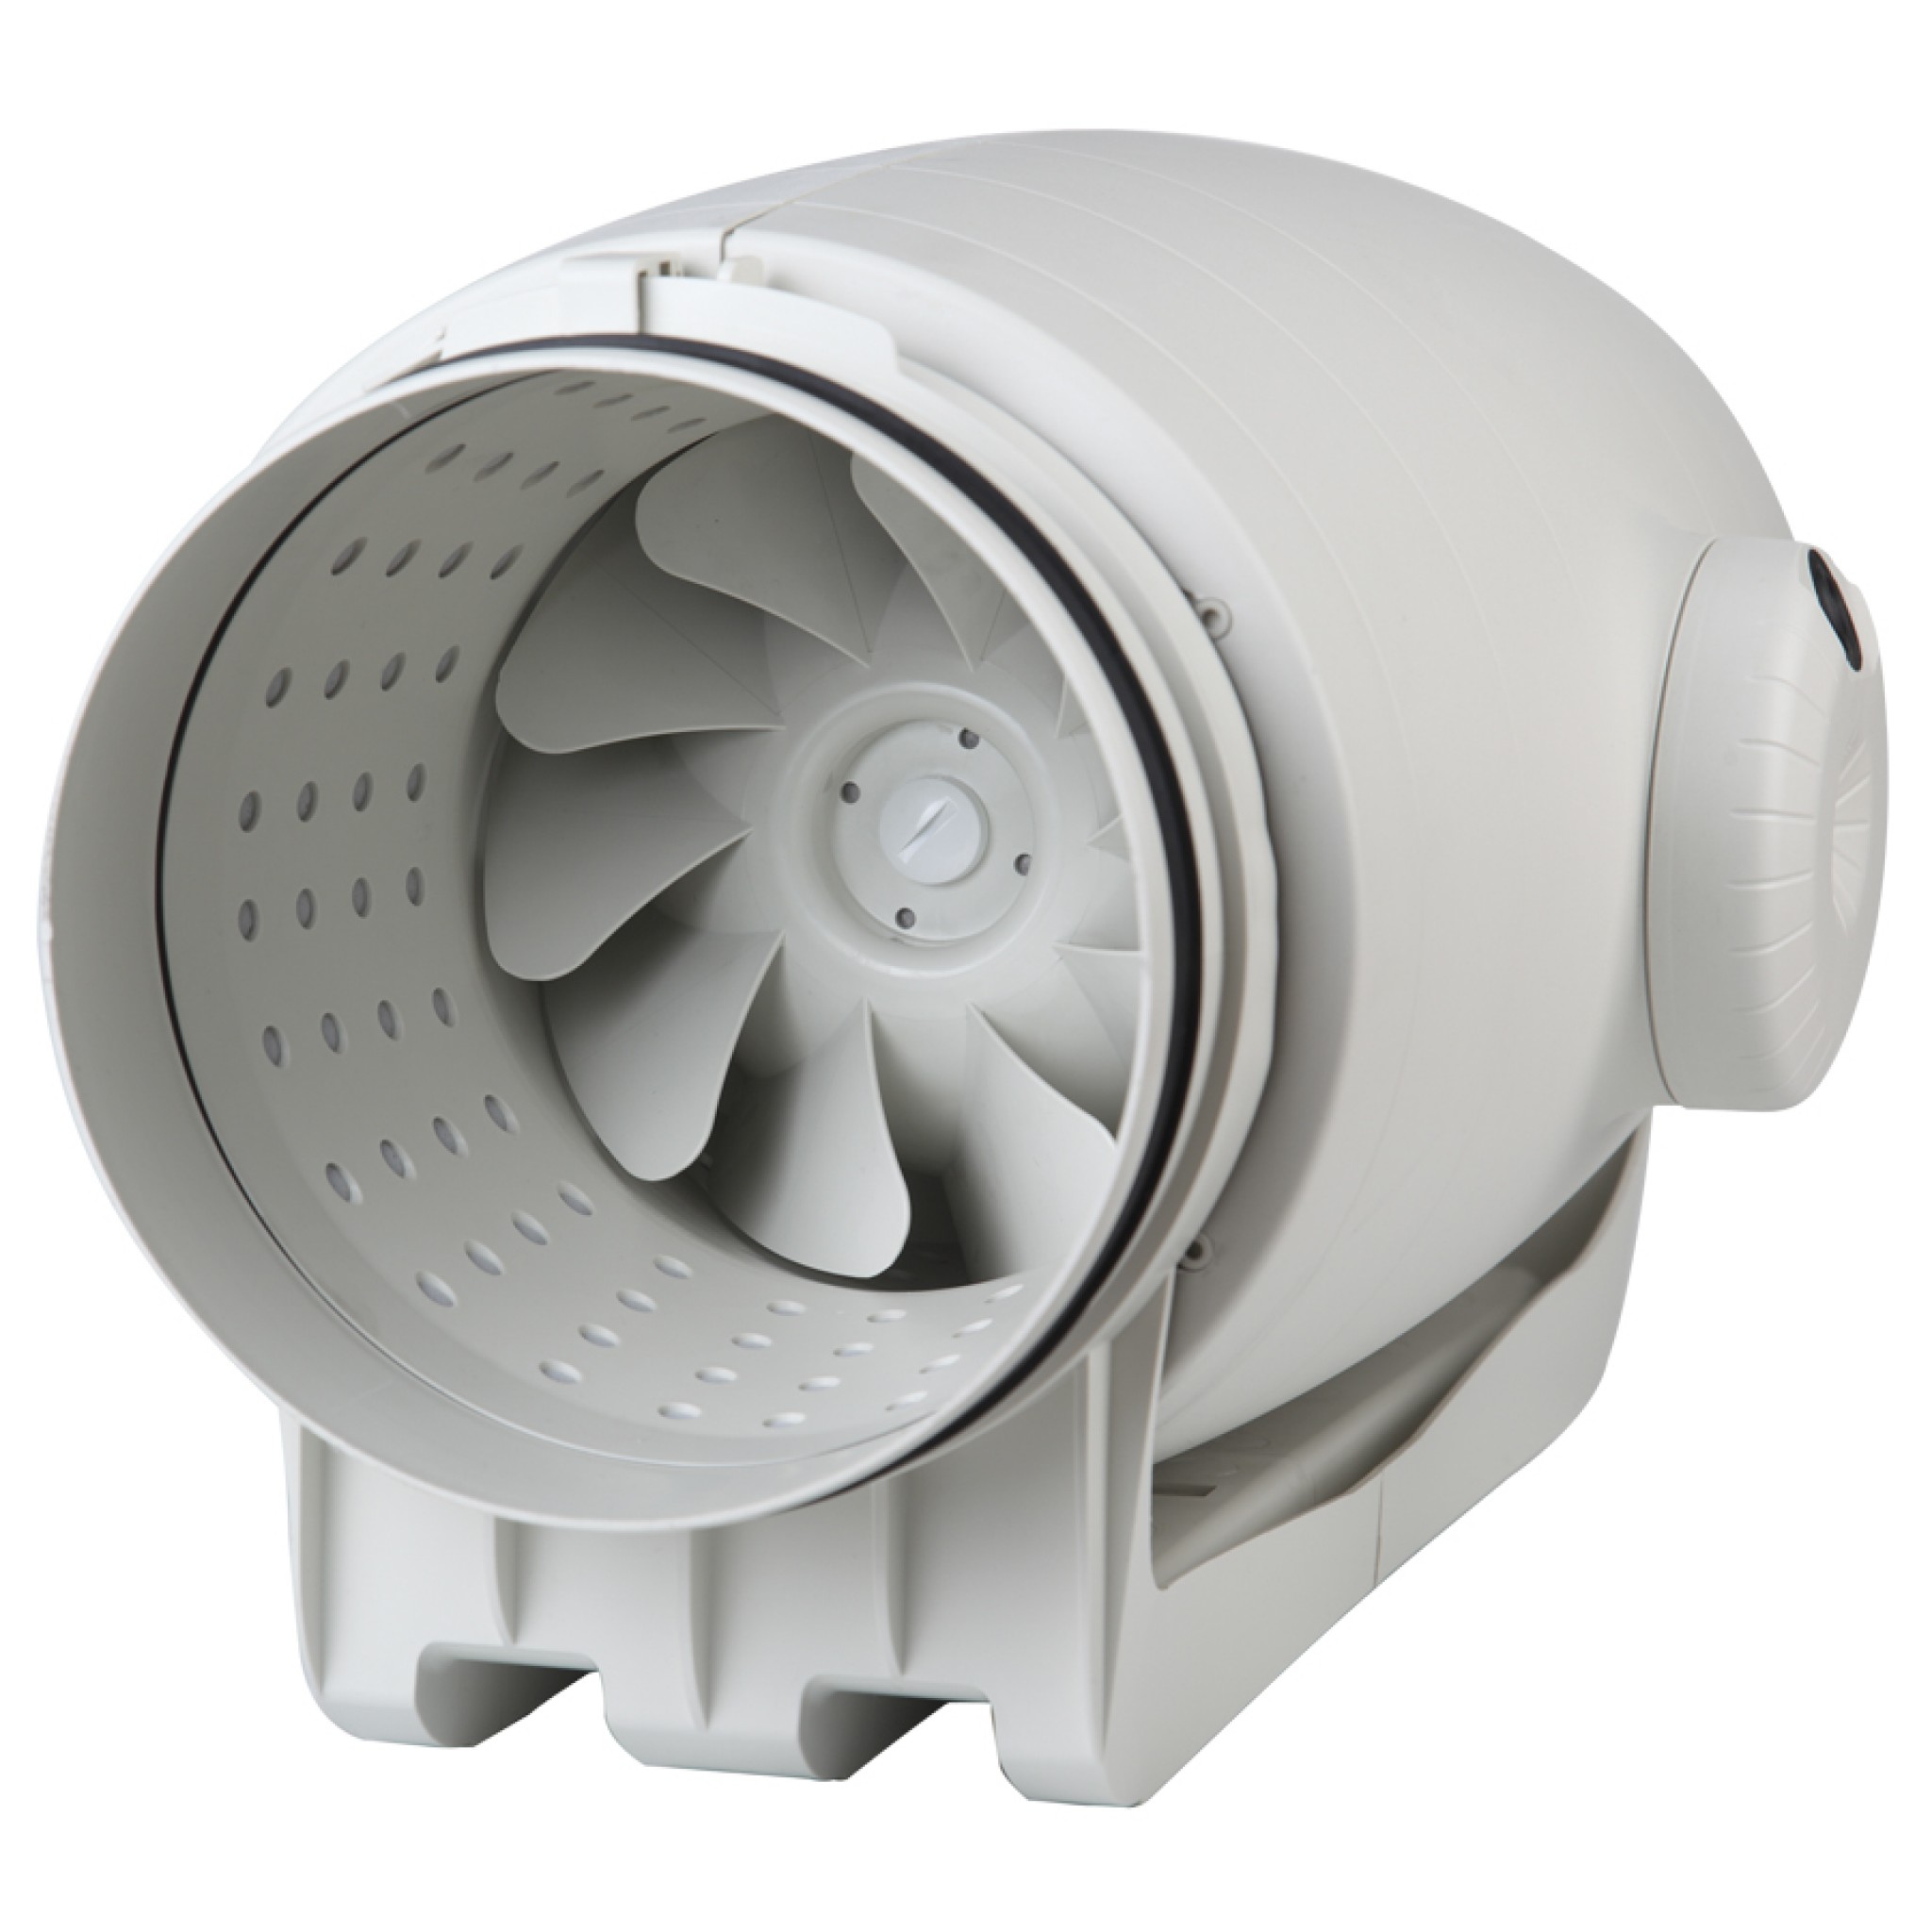 Канальный вентилятор для кухни 150 мм Soler&Palau TD-500/150-160 Silent Ecowatt